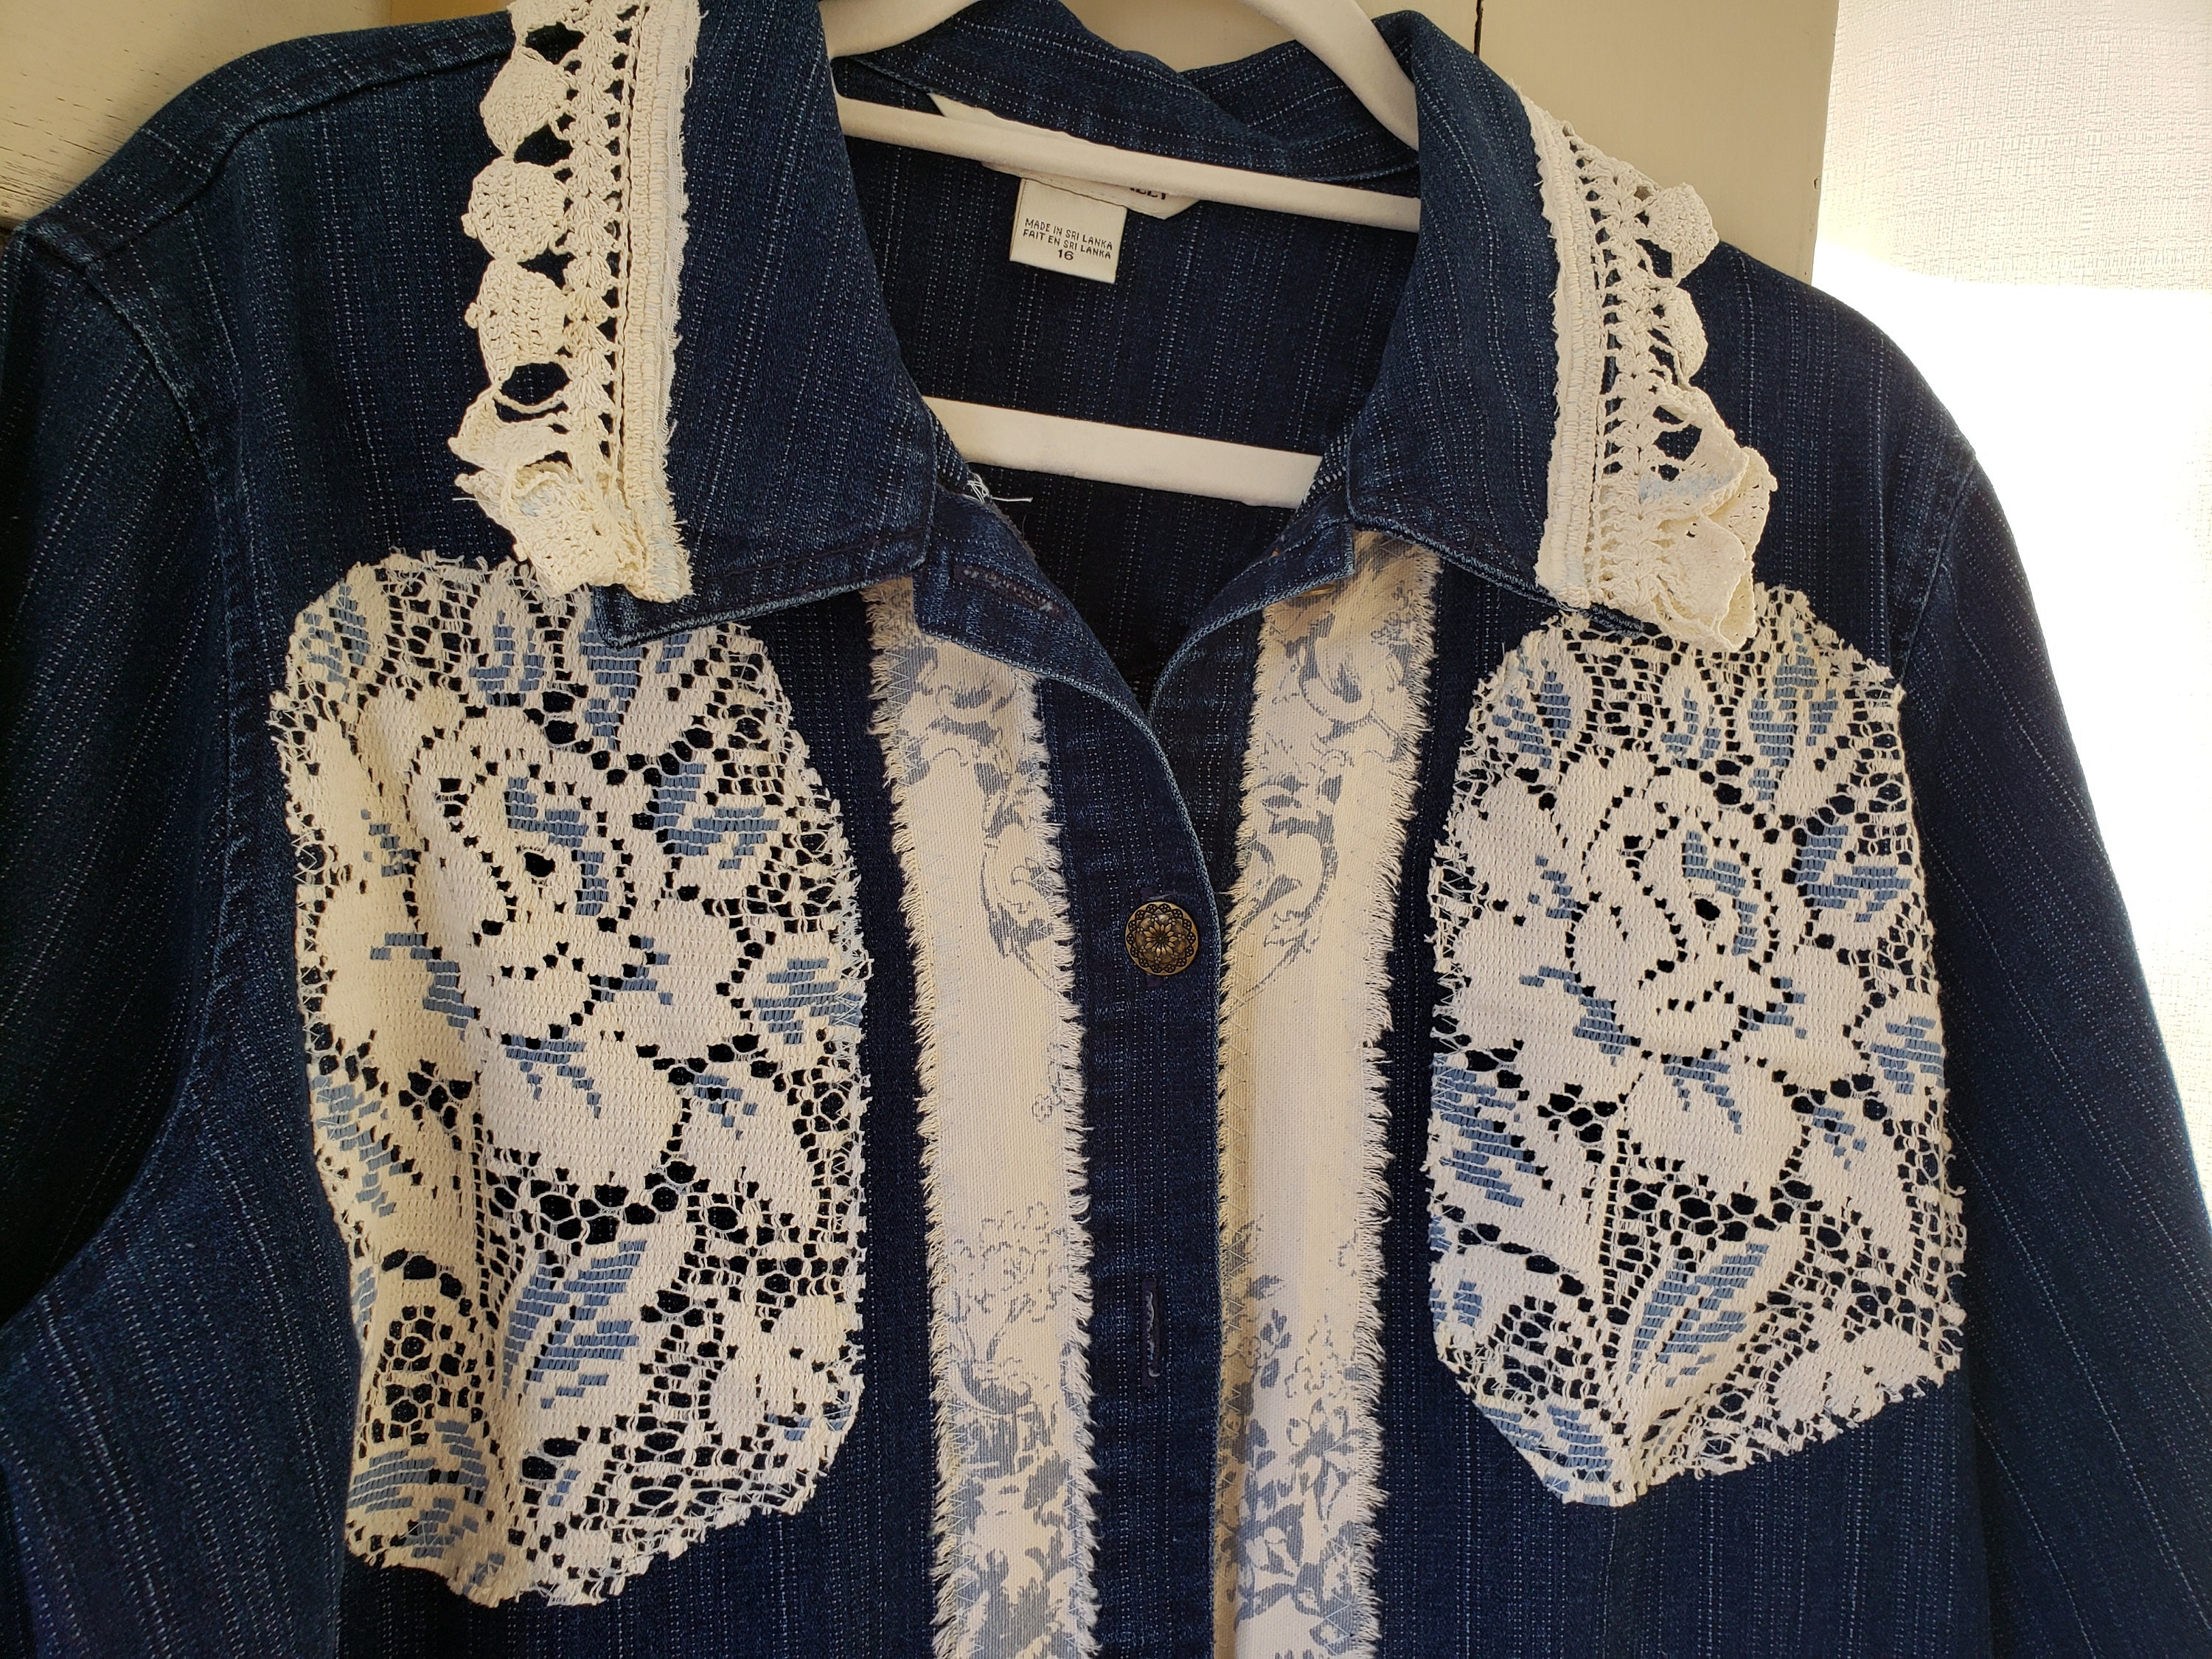 Upcycled Denim Jacket Frayed Toile Blue Roses and Ecru Lace | Etsy